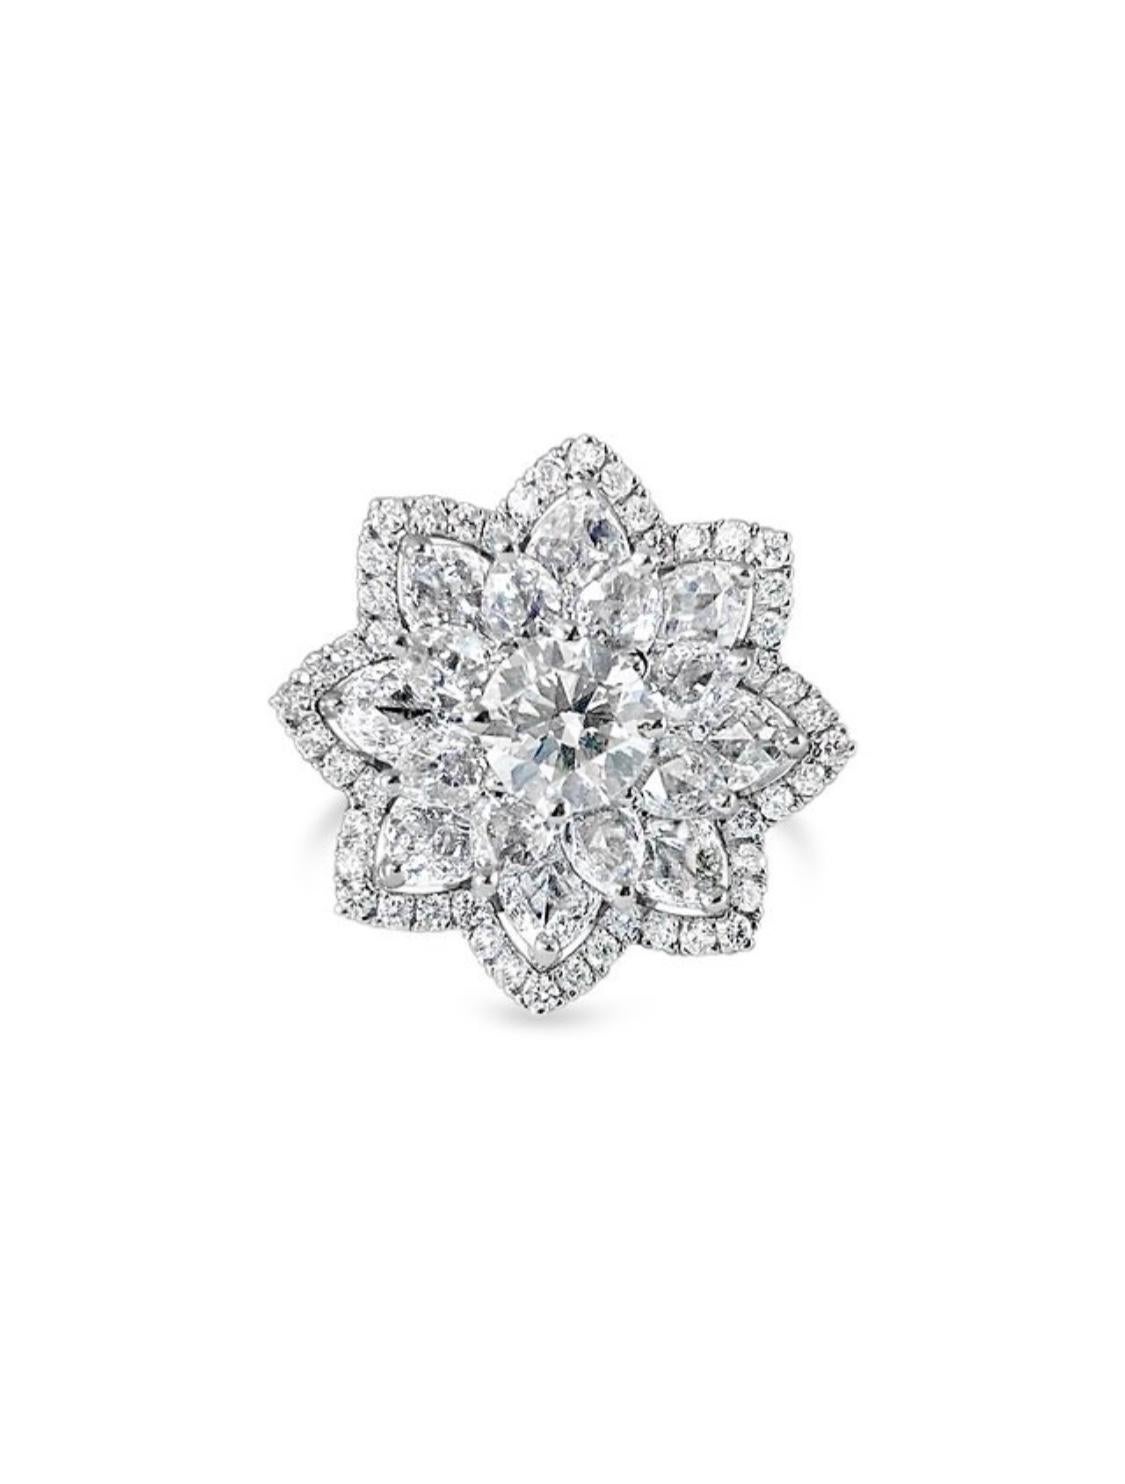 Il s'agit d'une magnifique bague florale comprenant un diamant rond brillant centré sur un lit à deux niveaux de diamants taillés en rose, réalisée à la main en or blanc 18 carats. 
Les détails sont les suivants : 
Poids total des diamants : 2,26